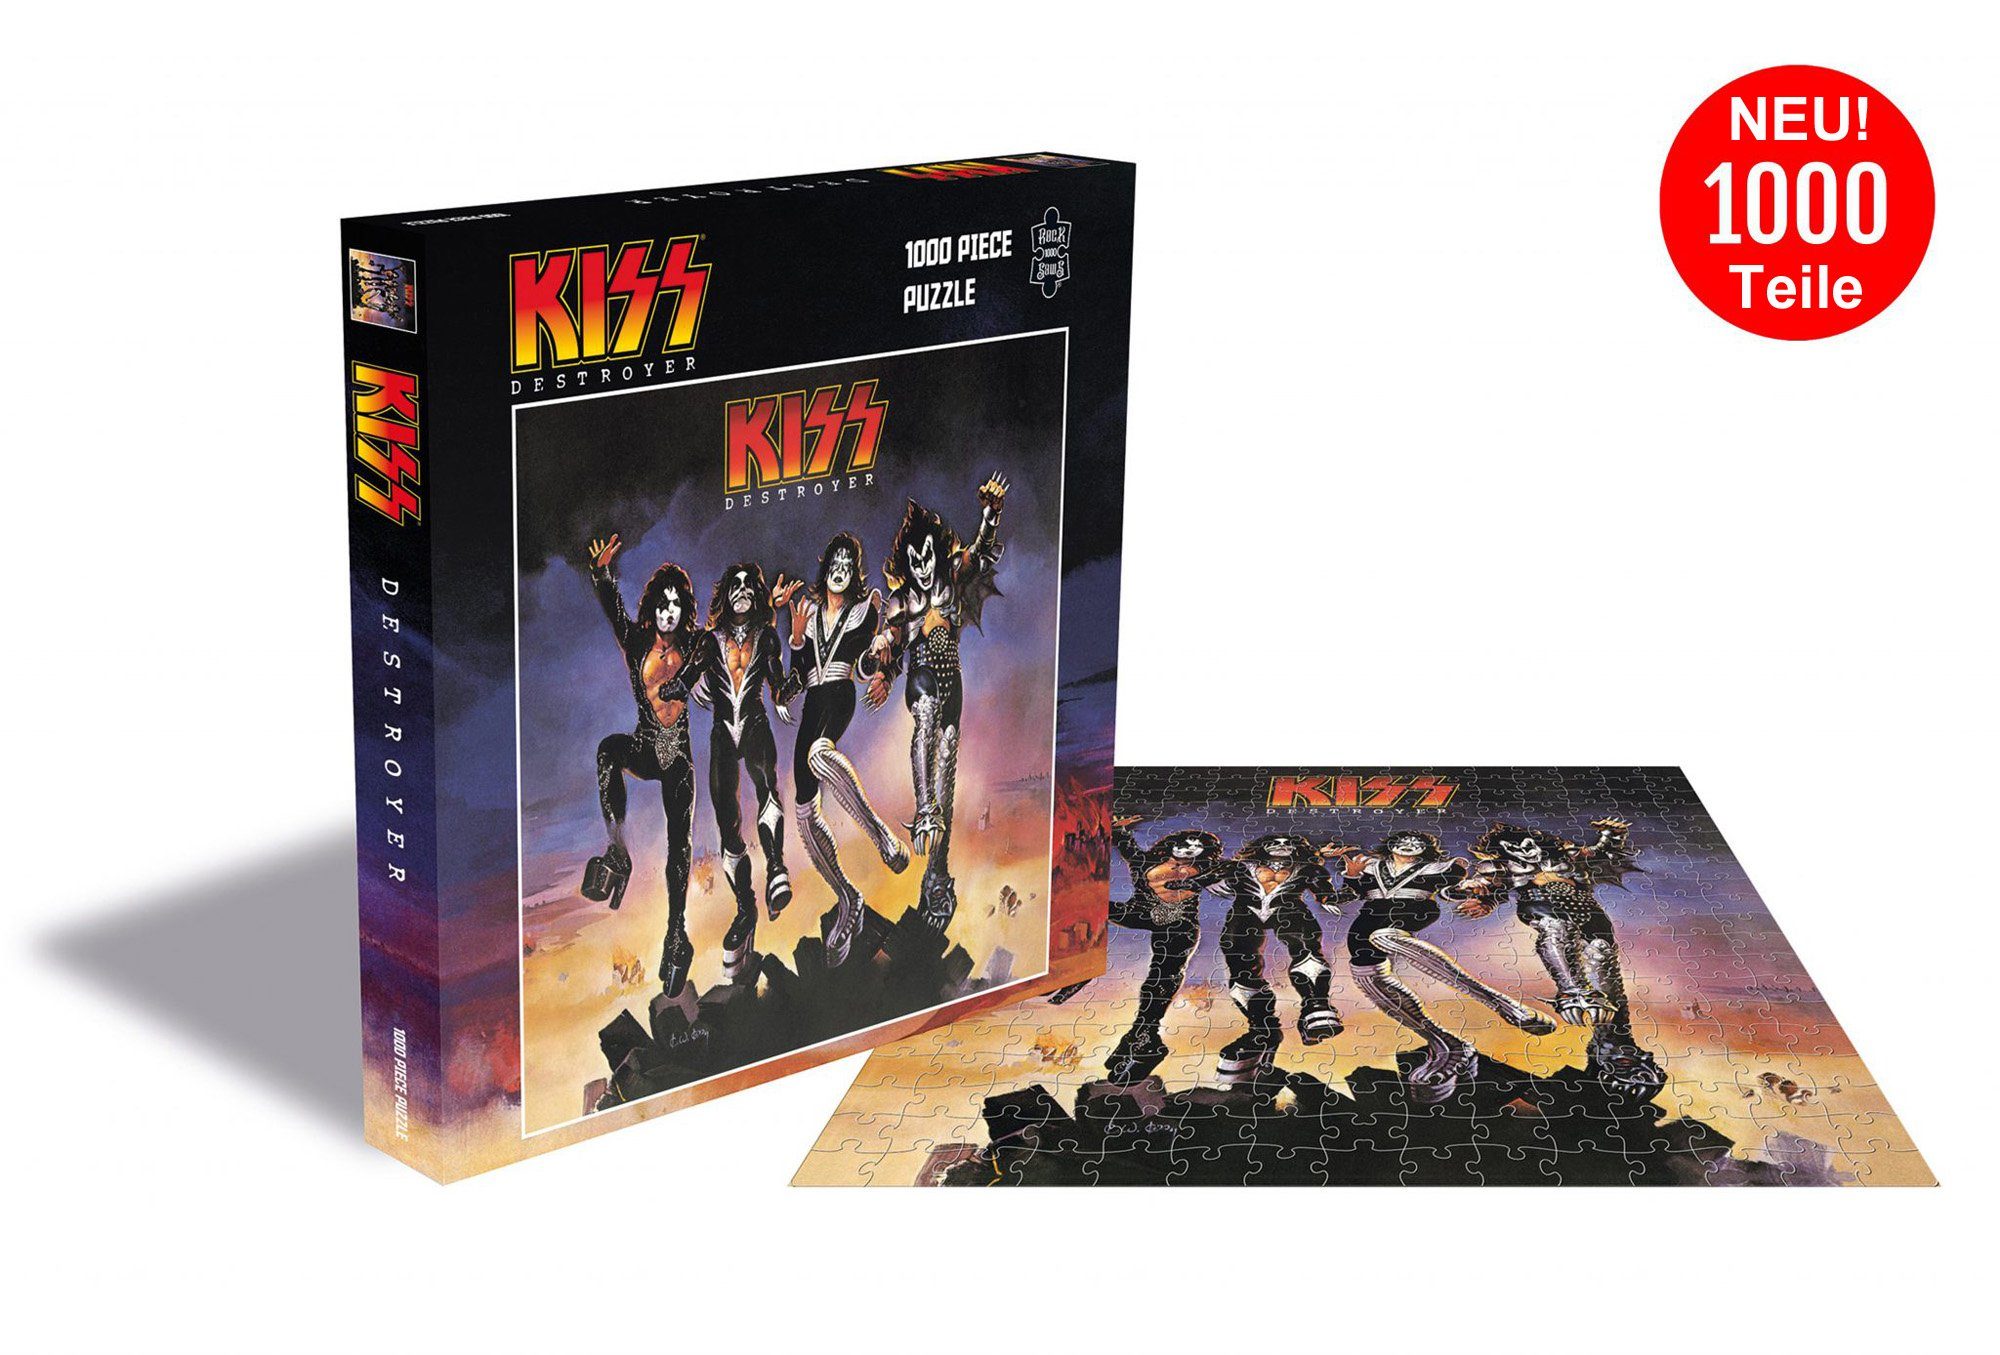 empireposter Puzzle Kiss Destroyer - 1000 Teile LP Cover Puzzle im Format 57x57 cm, 1000 Puzzleteile